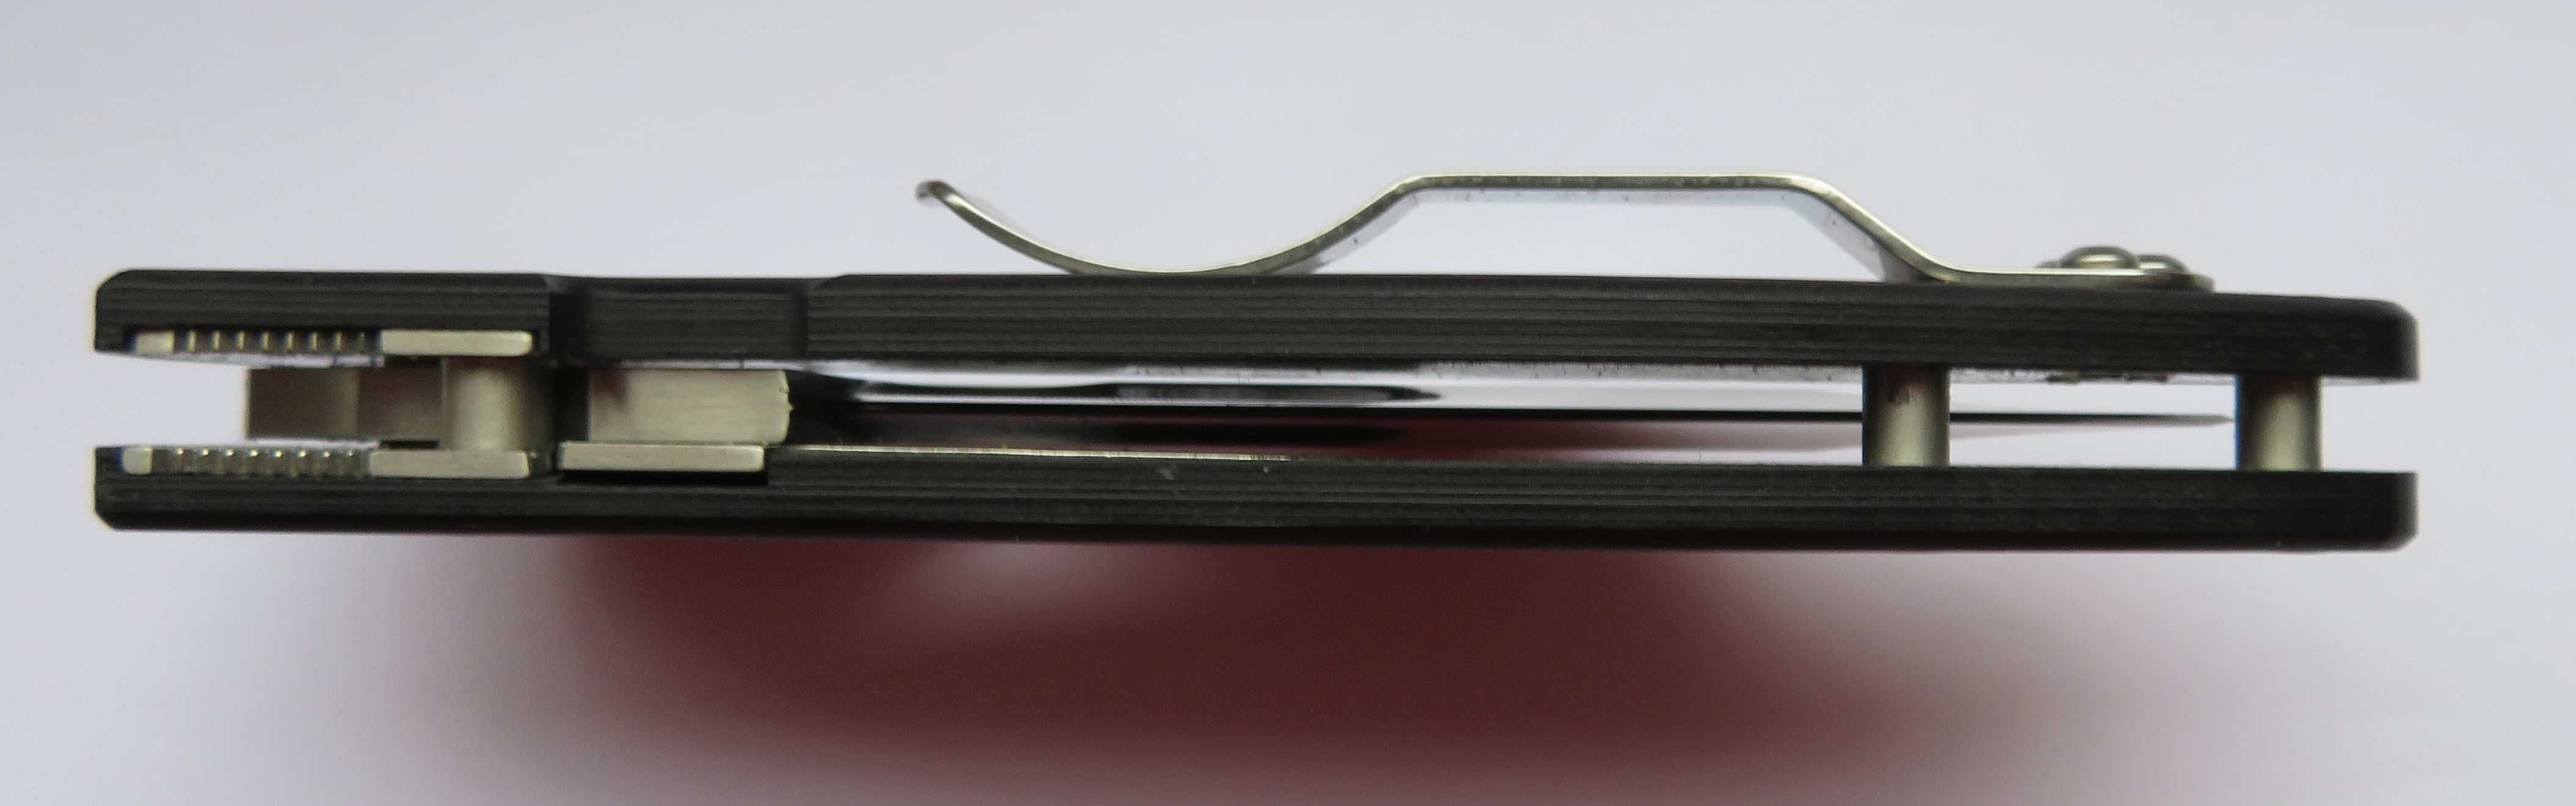 Nóż folder Spyderco Yojimbo  carbon